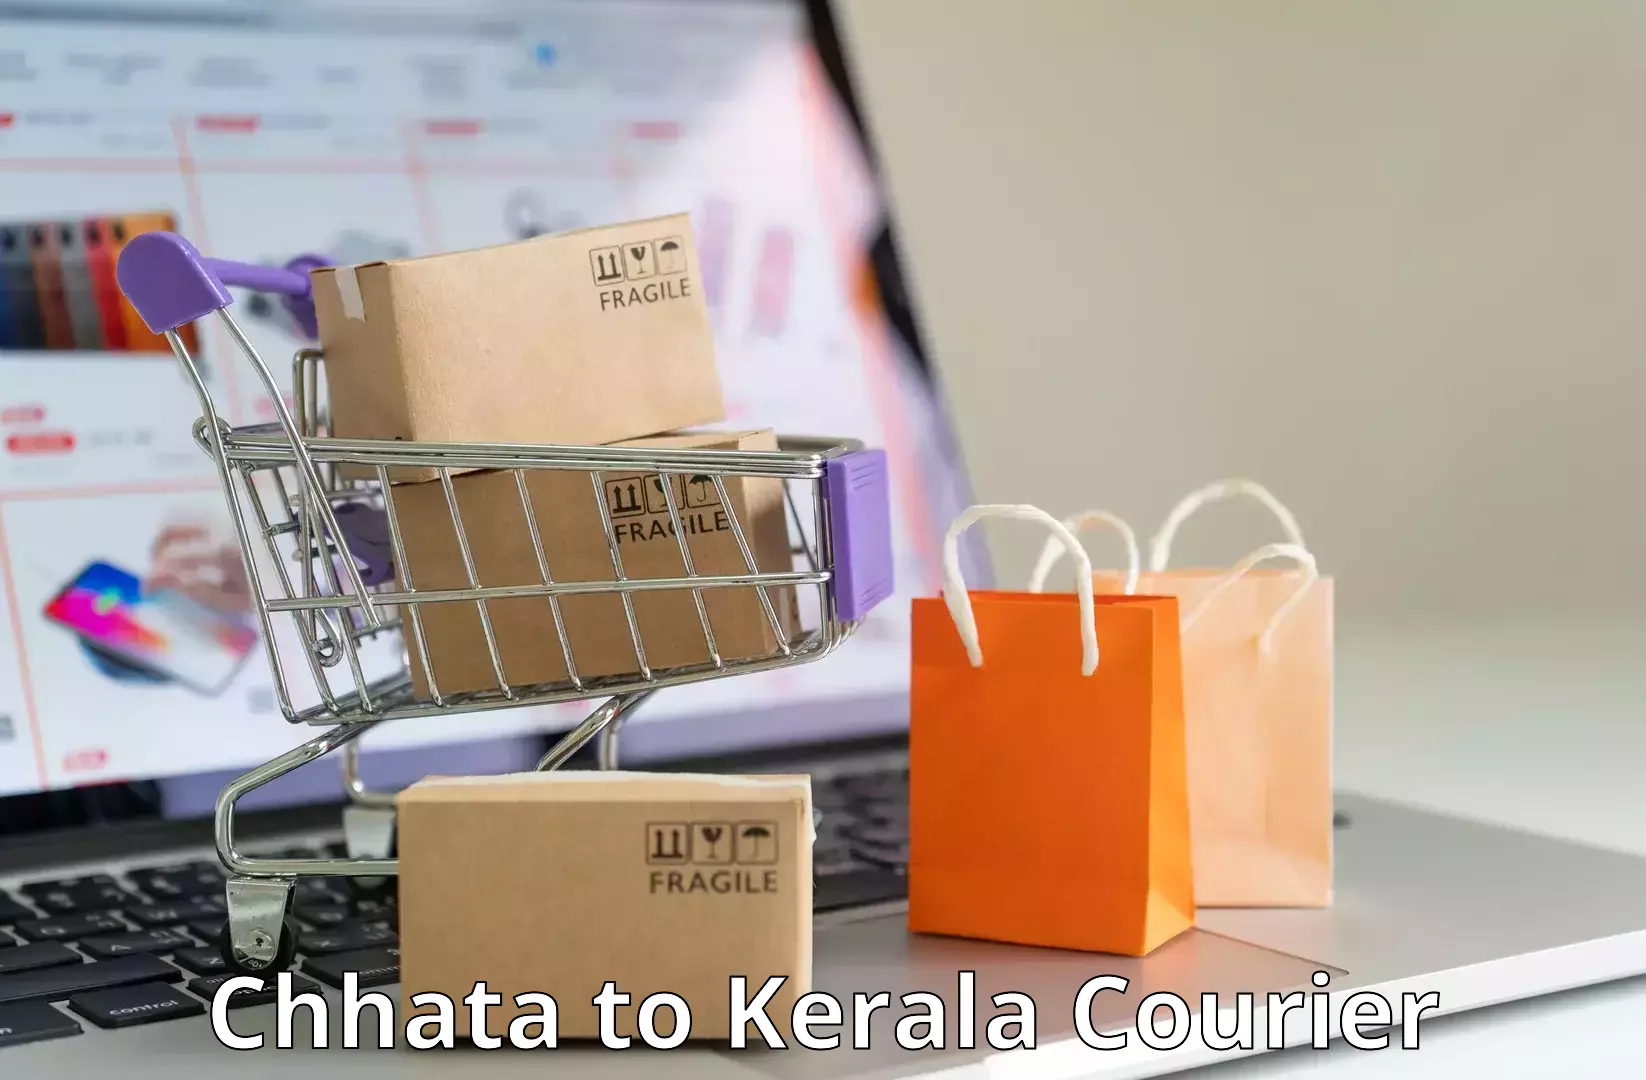 Urban courier service Chhata to Sankaramangalam